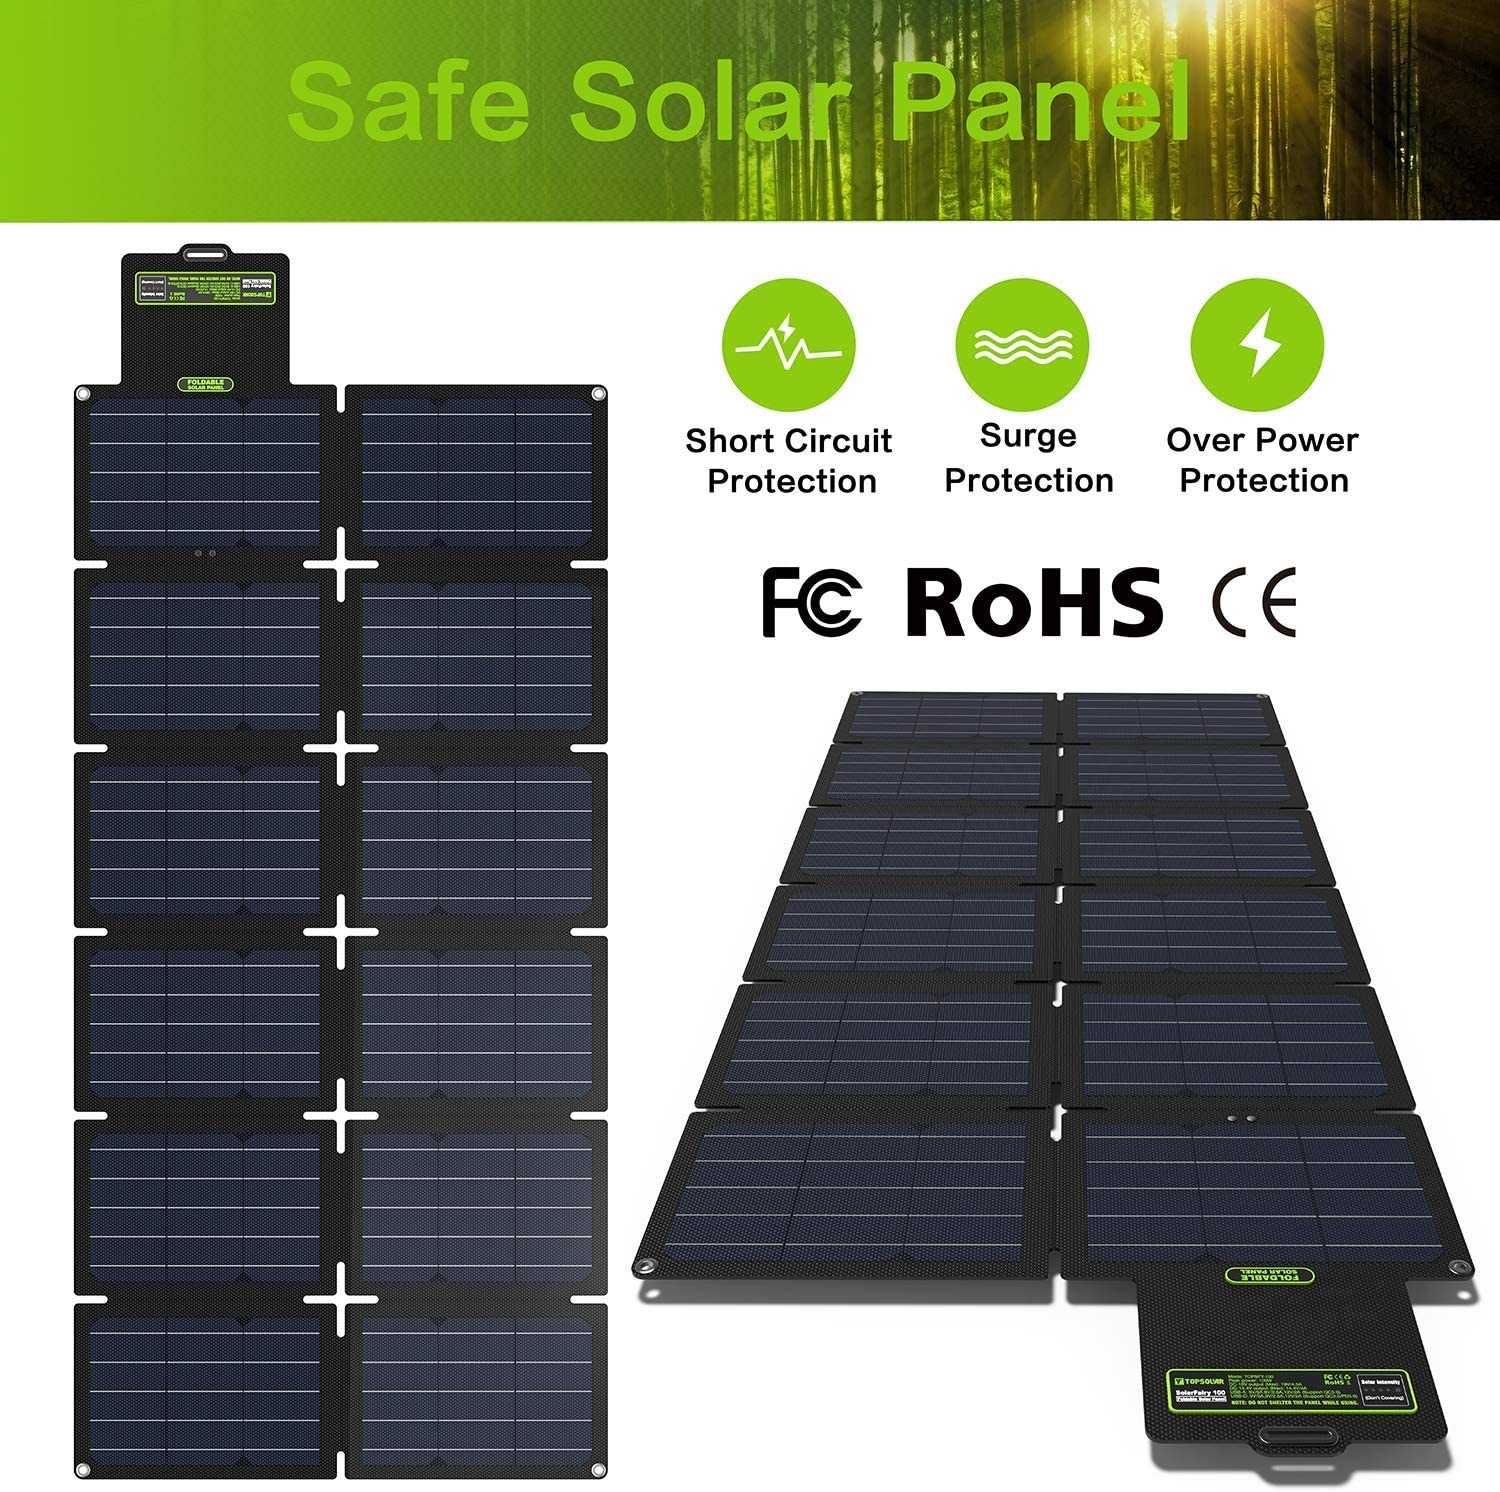 TopSolar 100W портативная солнечная складная панель для зарядки [США]